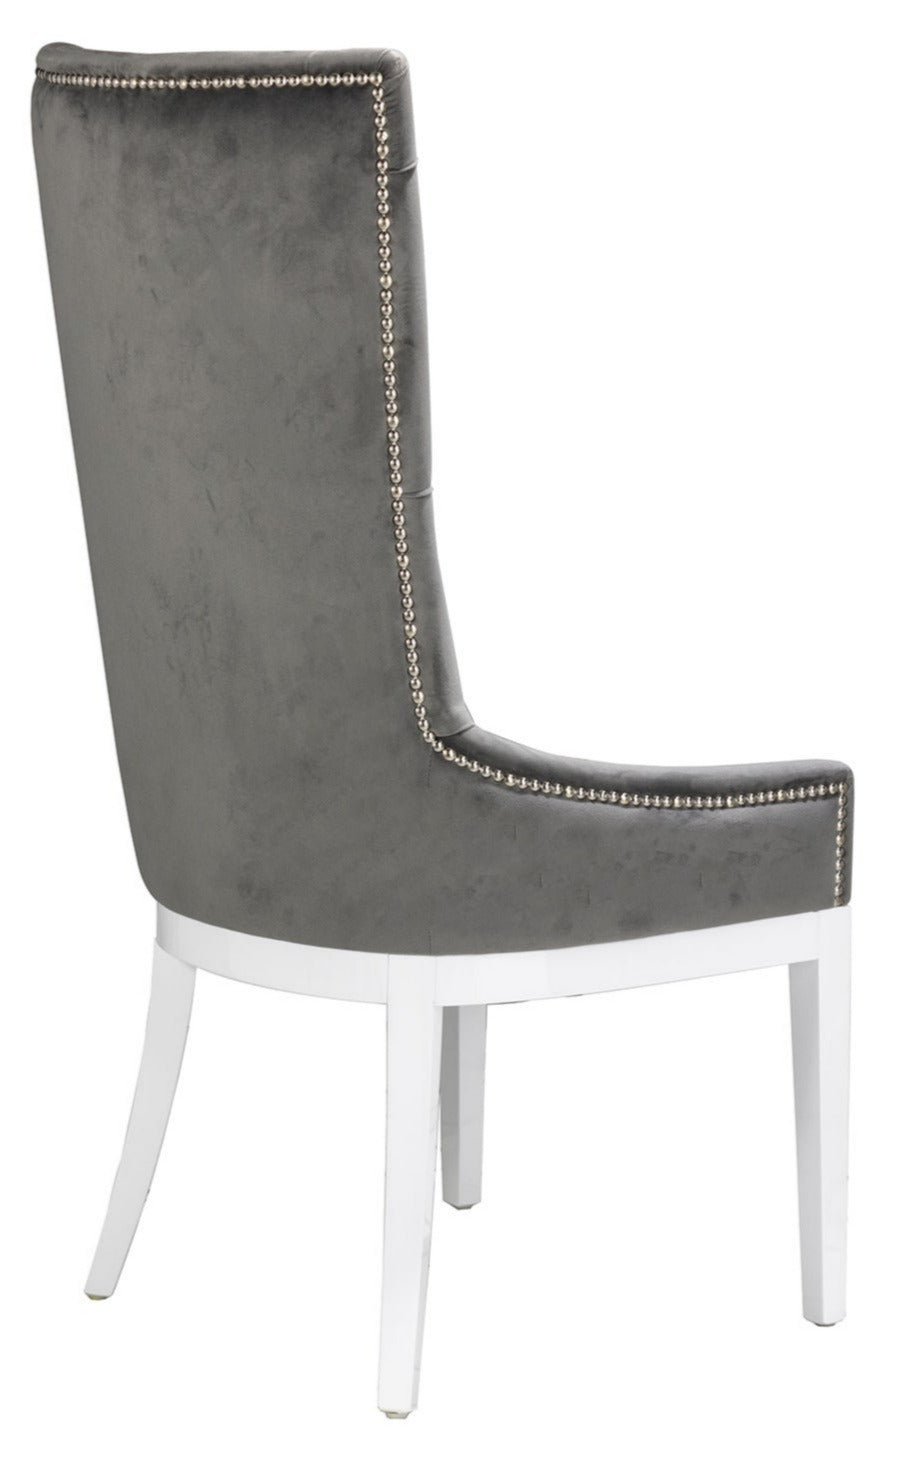 High-back velvet dining chair